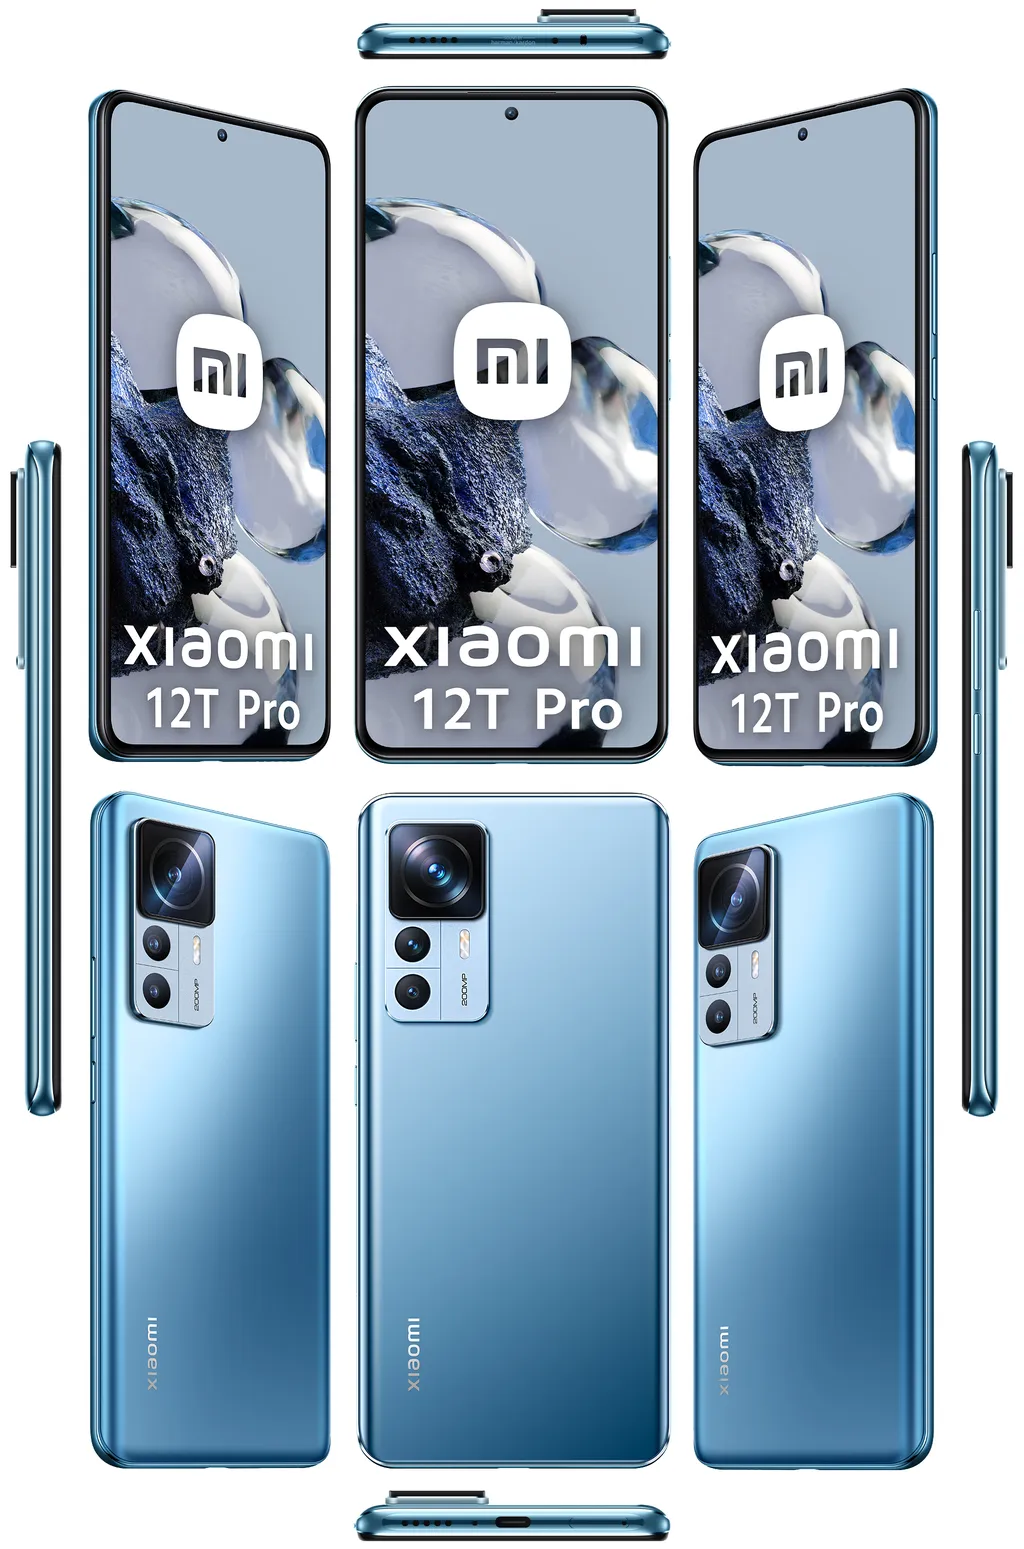 Segundo rumores e vazamentos, o Xiaomi 12T Pro será o primeiro celular da marca a embarcar uma câmera de 200 MP (Imagem: Evan Blass)